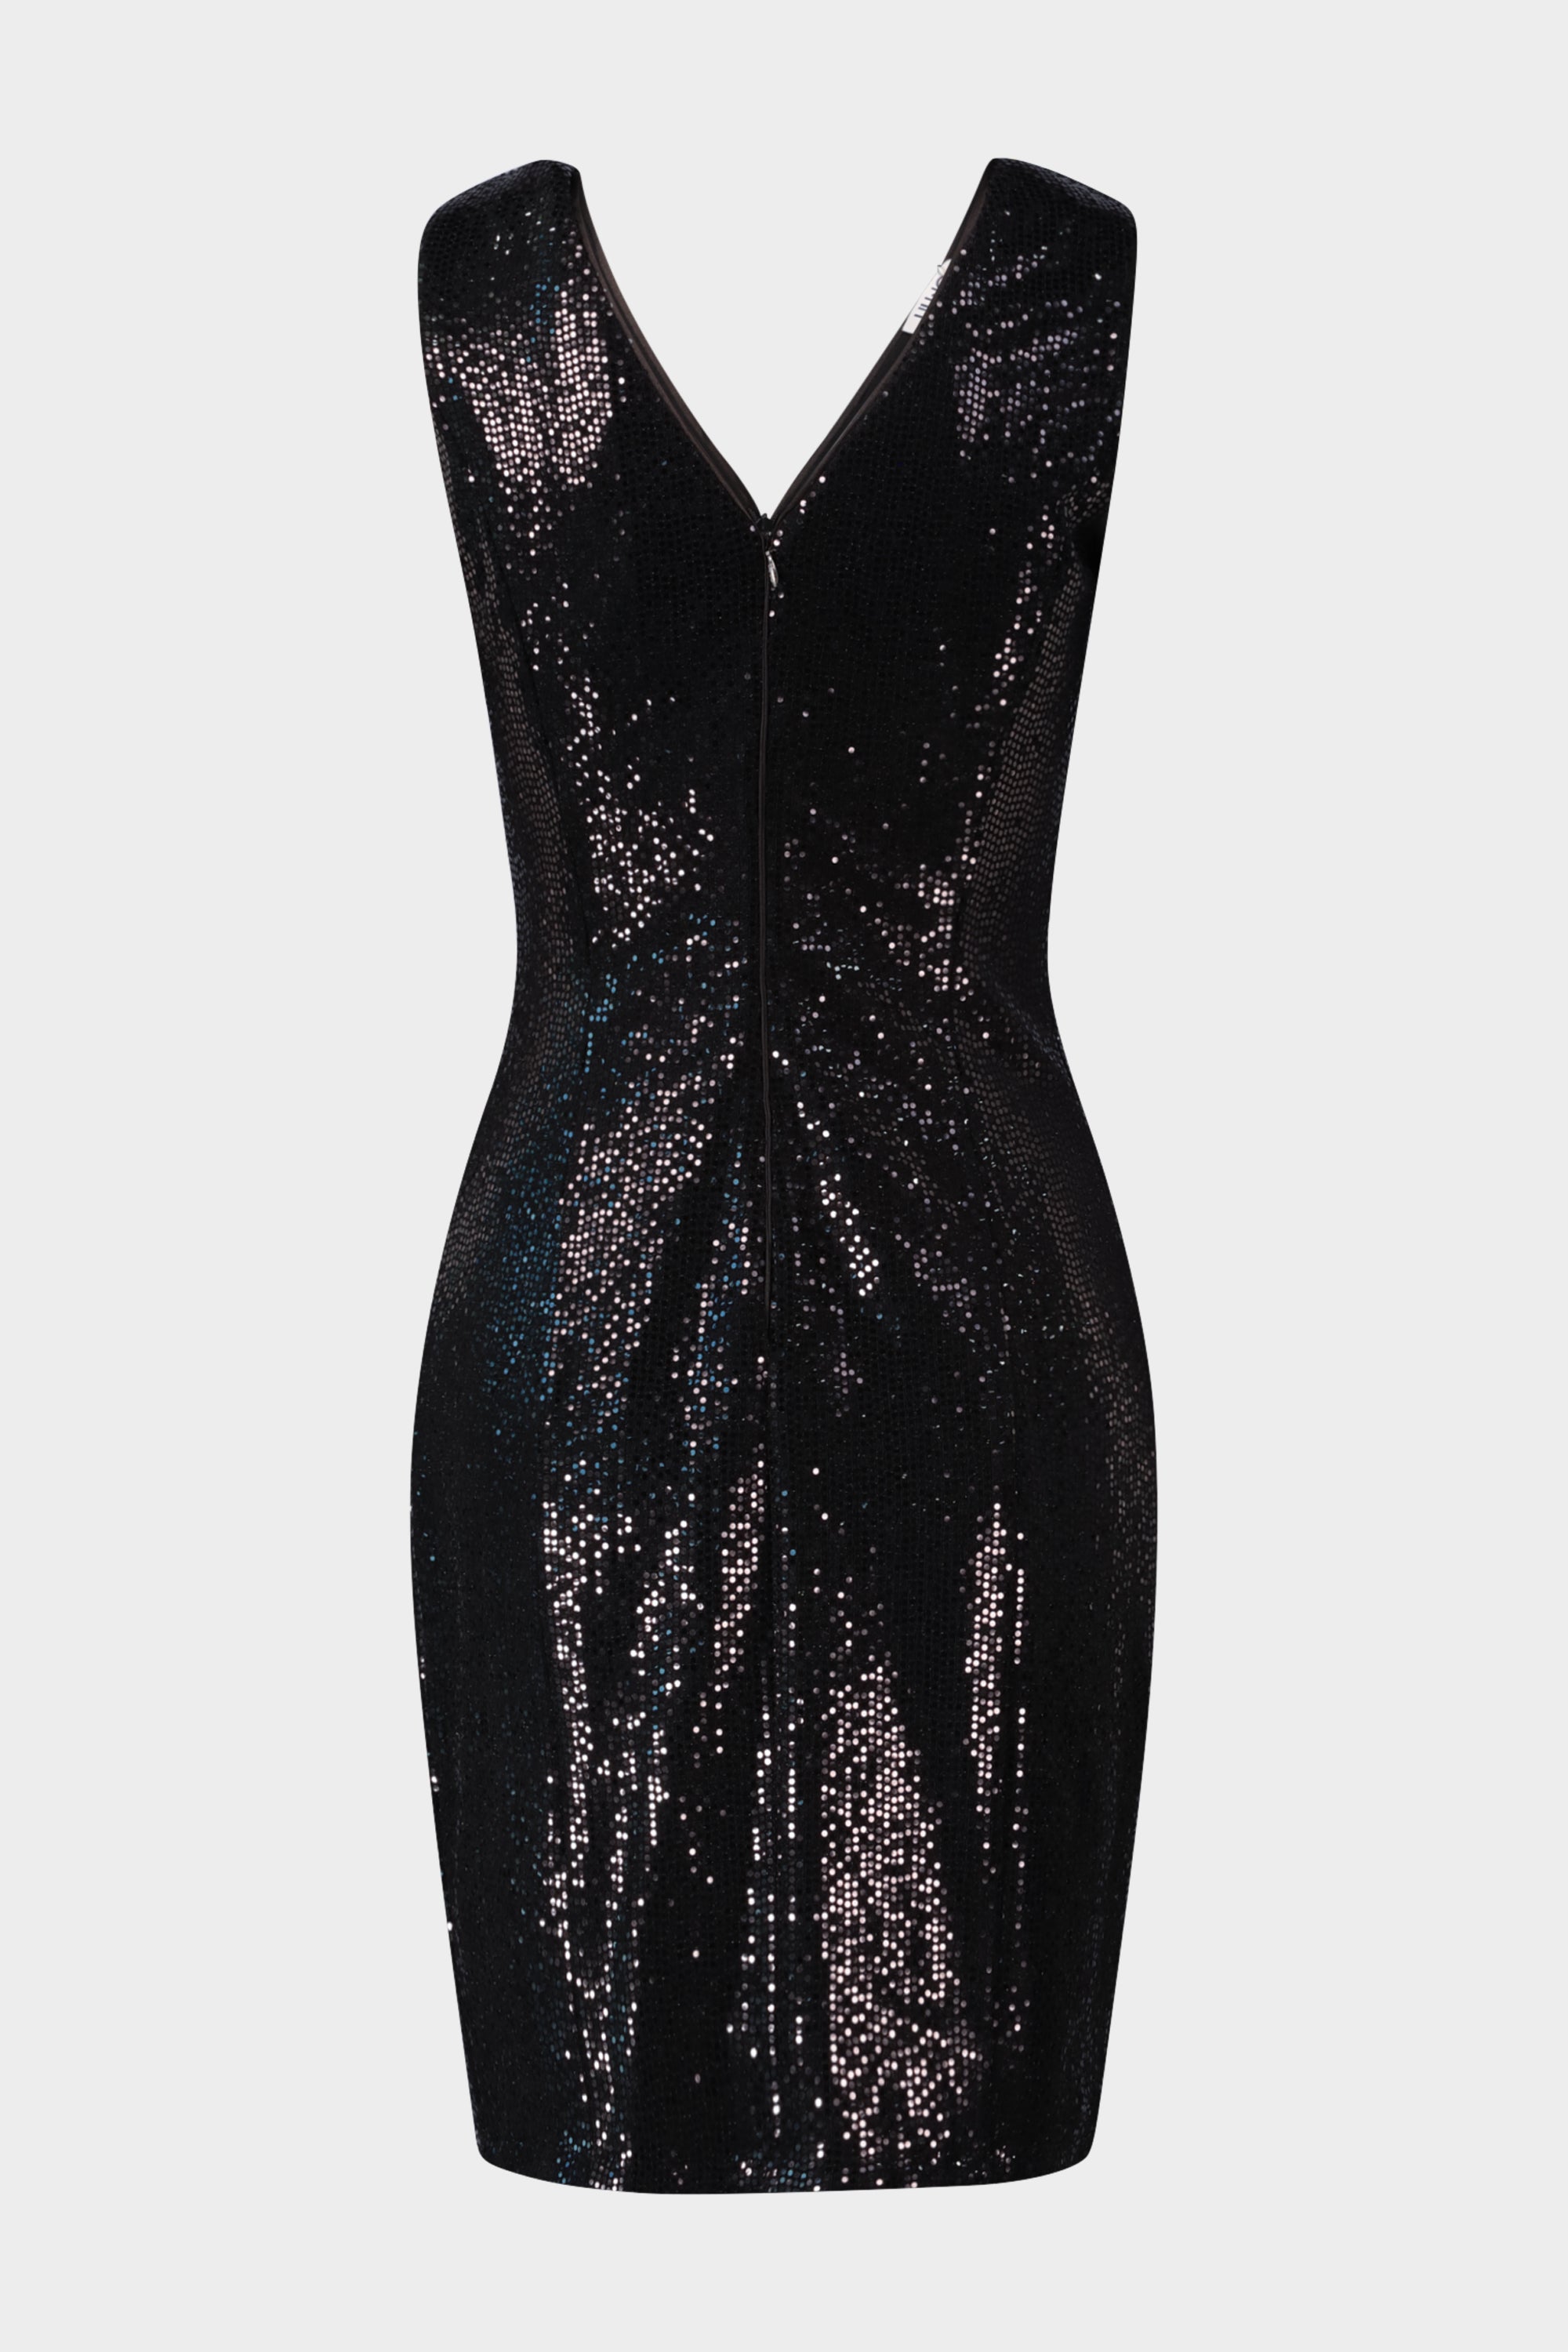 שמלת איי ליין לנשים מוטיב נצנצים LIU JO Vendome online | ונדום .